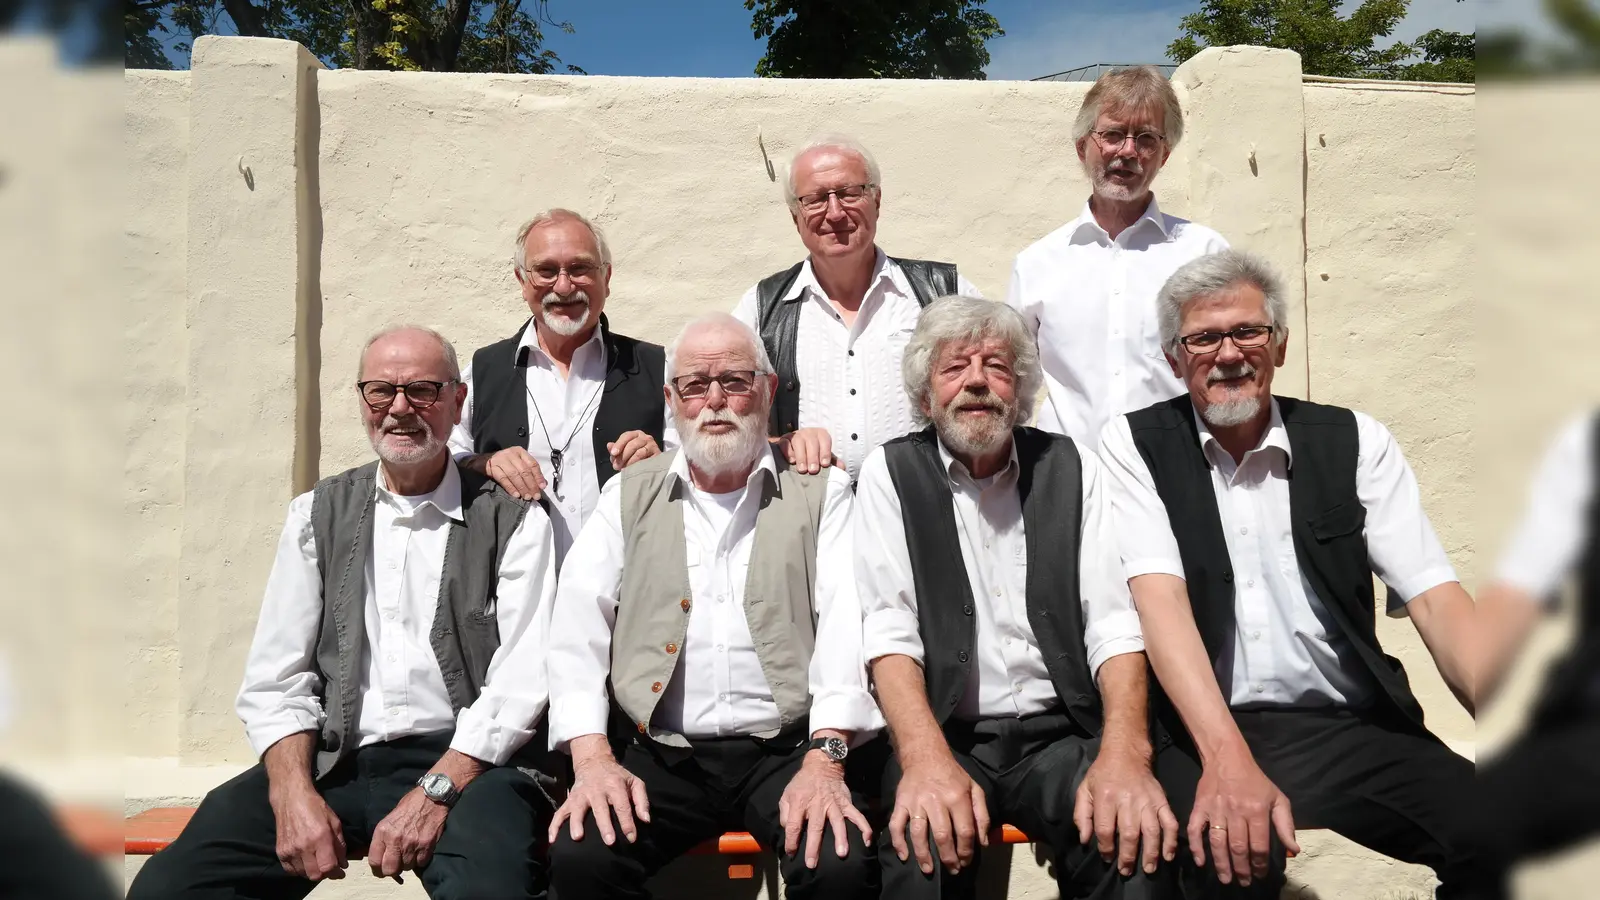 Der Freundeskreis Schloss Bevern e.V. veranstaltet den traditionellen Jazz-Frühschoppen. In diesem Jahr ist die Sleepy Town Jazzband zu Gast, seit 35 Jahren die Jazzband Holzmindens. (Foto: privat)